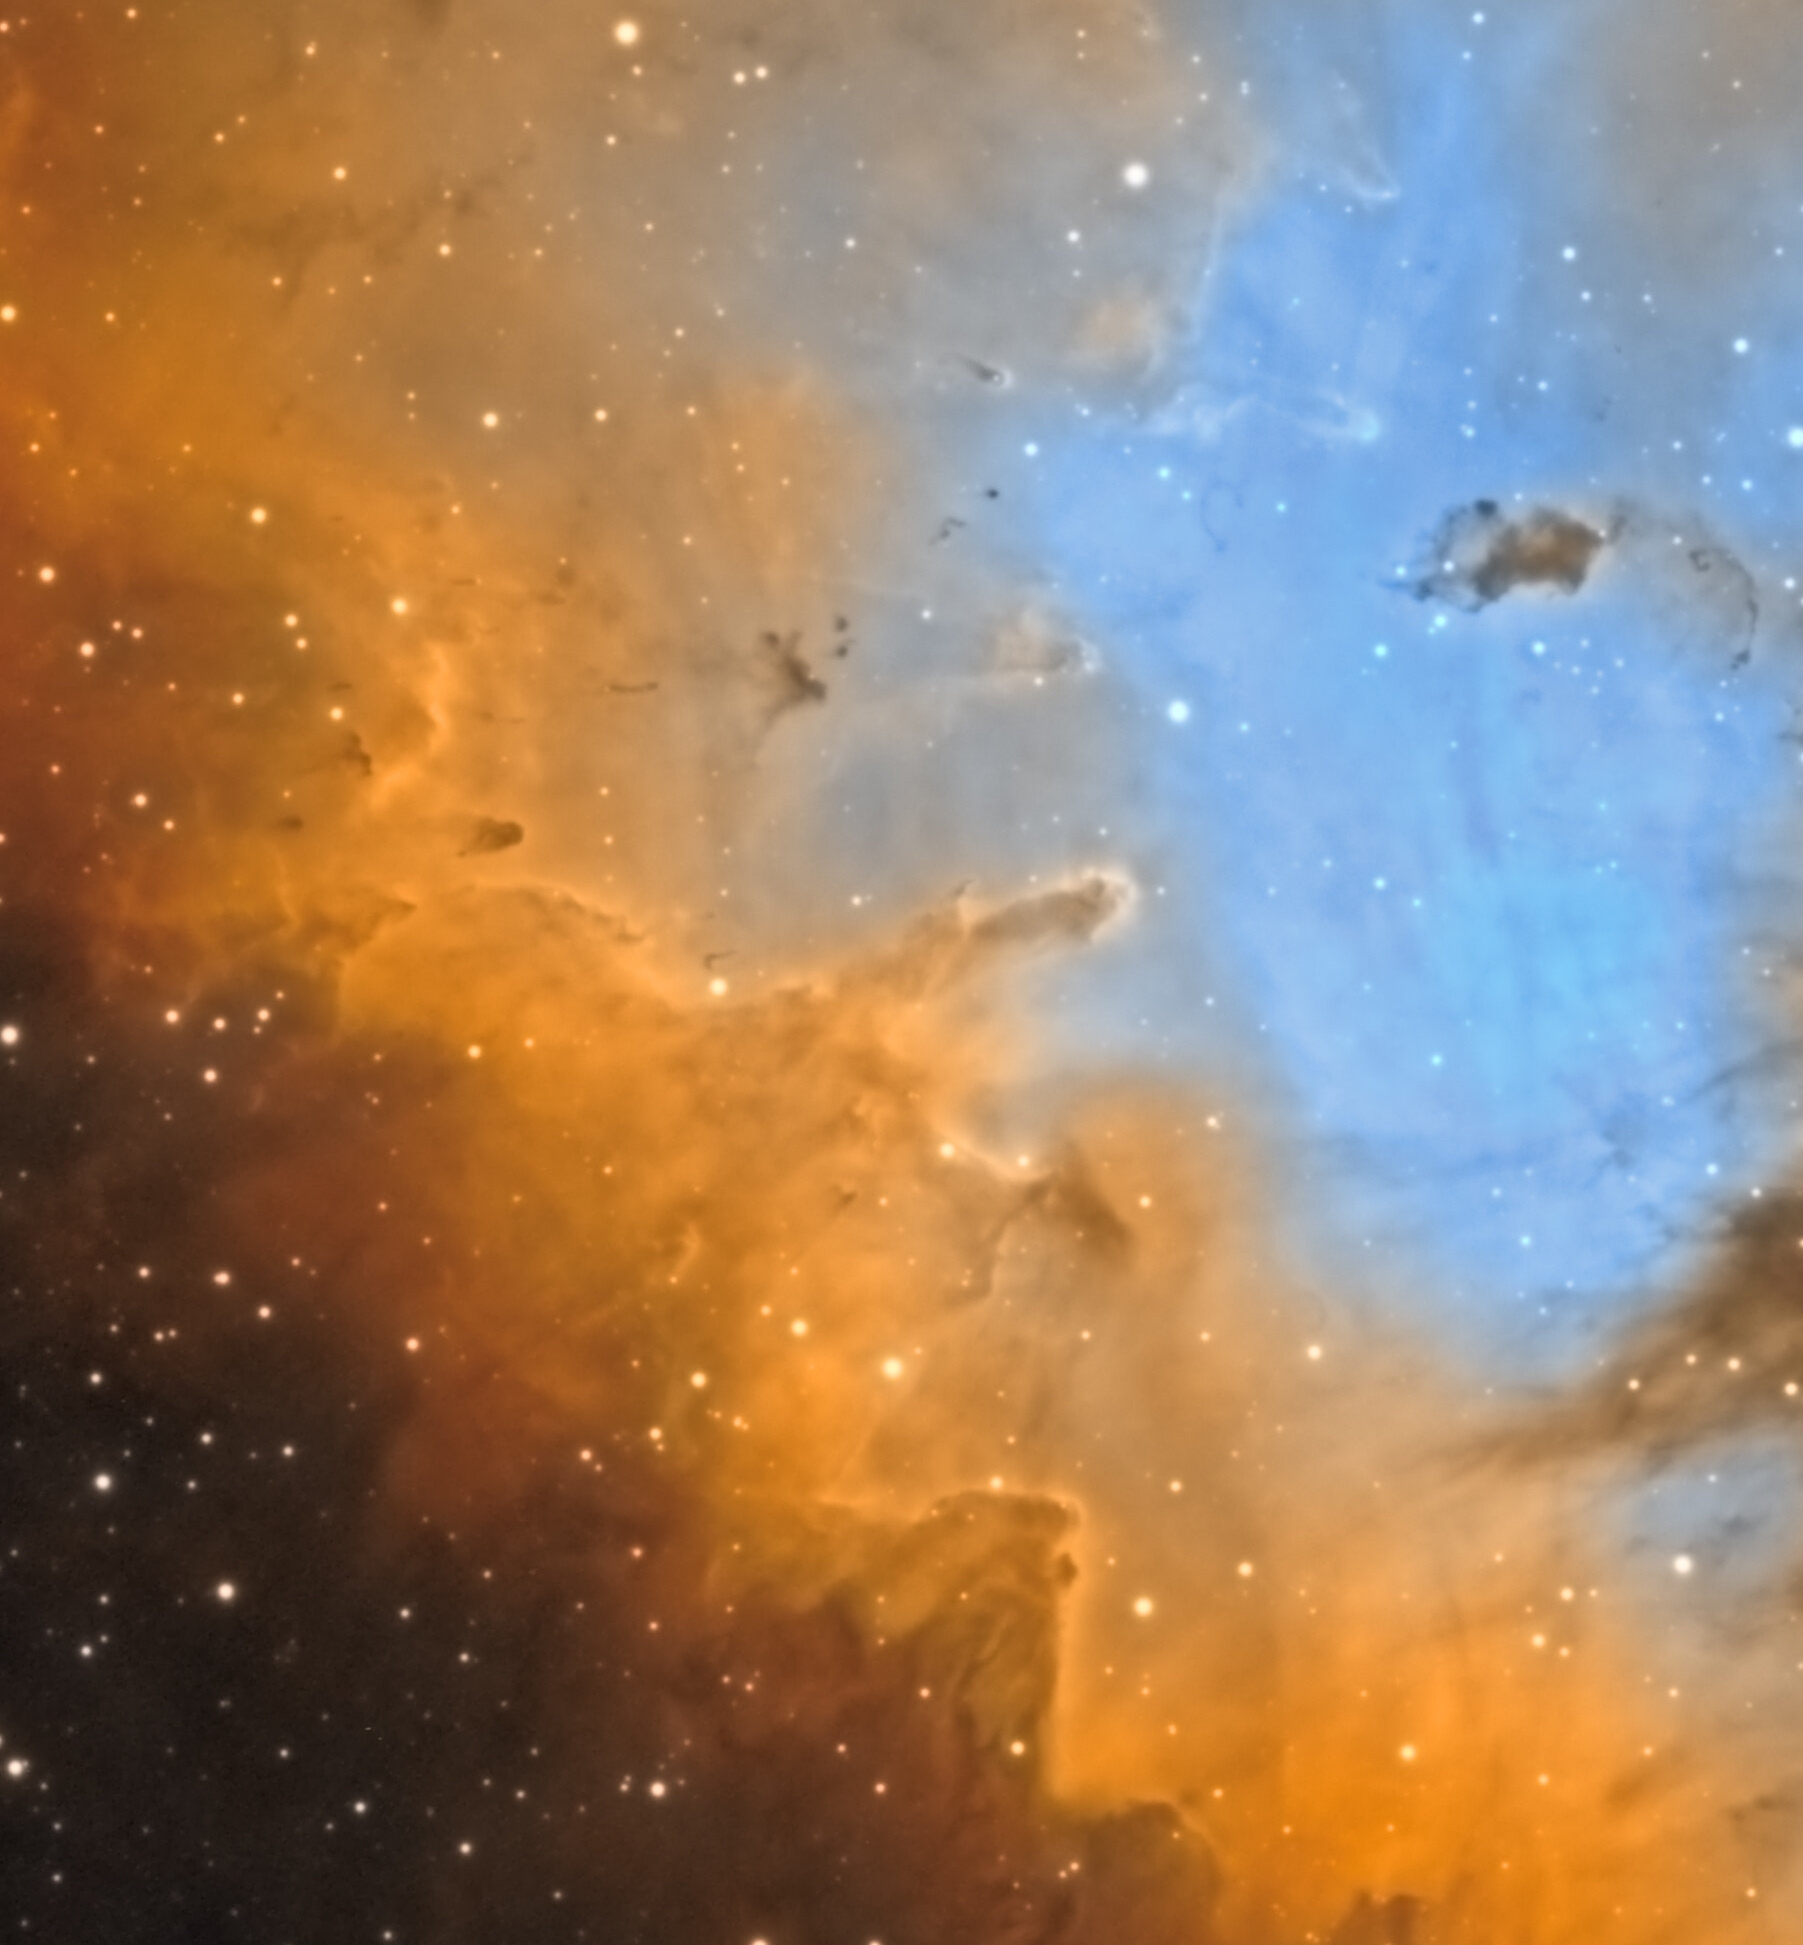 NGC281_SHO_CROPV1.jpg.9ad910f14f3e4a5309fb703a0b55fda2.jpg